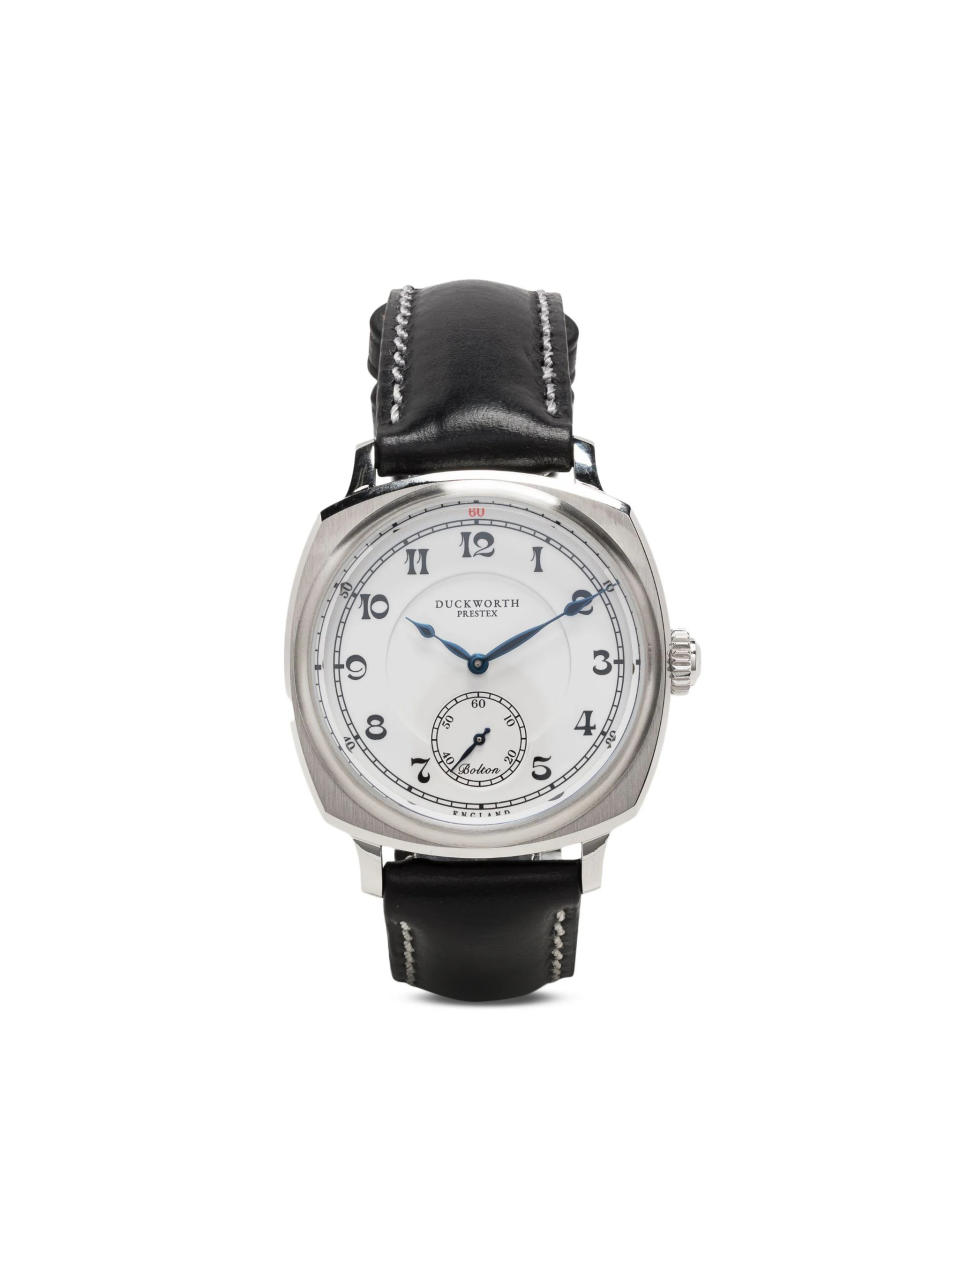 男裝手錶入門︱6大$5,000下腕錶品牌推薦 英國百年品牌Duckworth Prestex/高CP值潛水錶Tissot